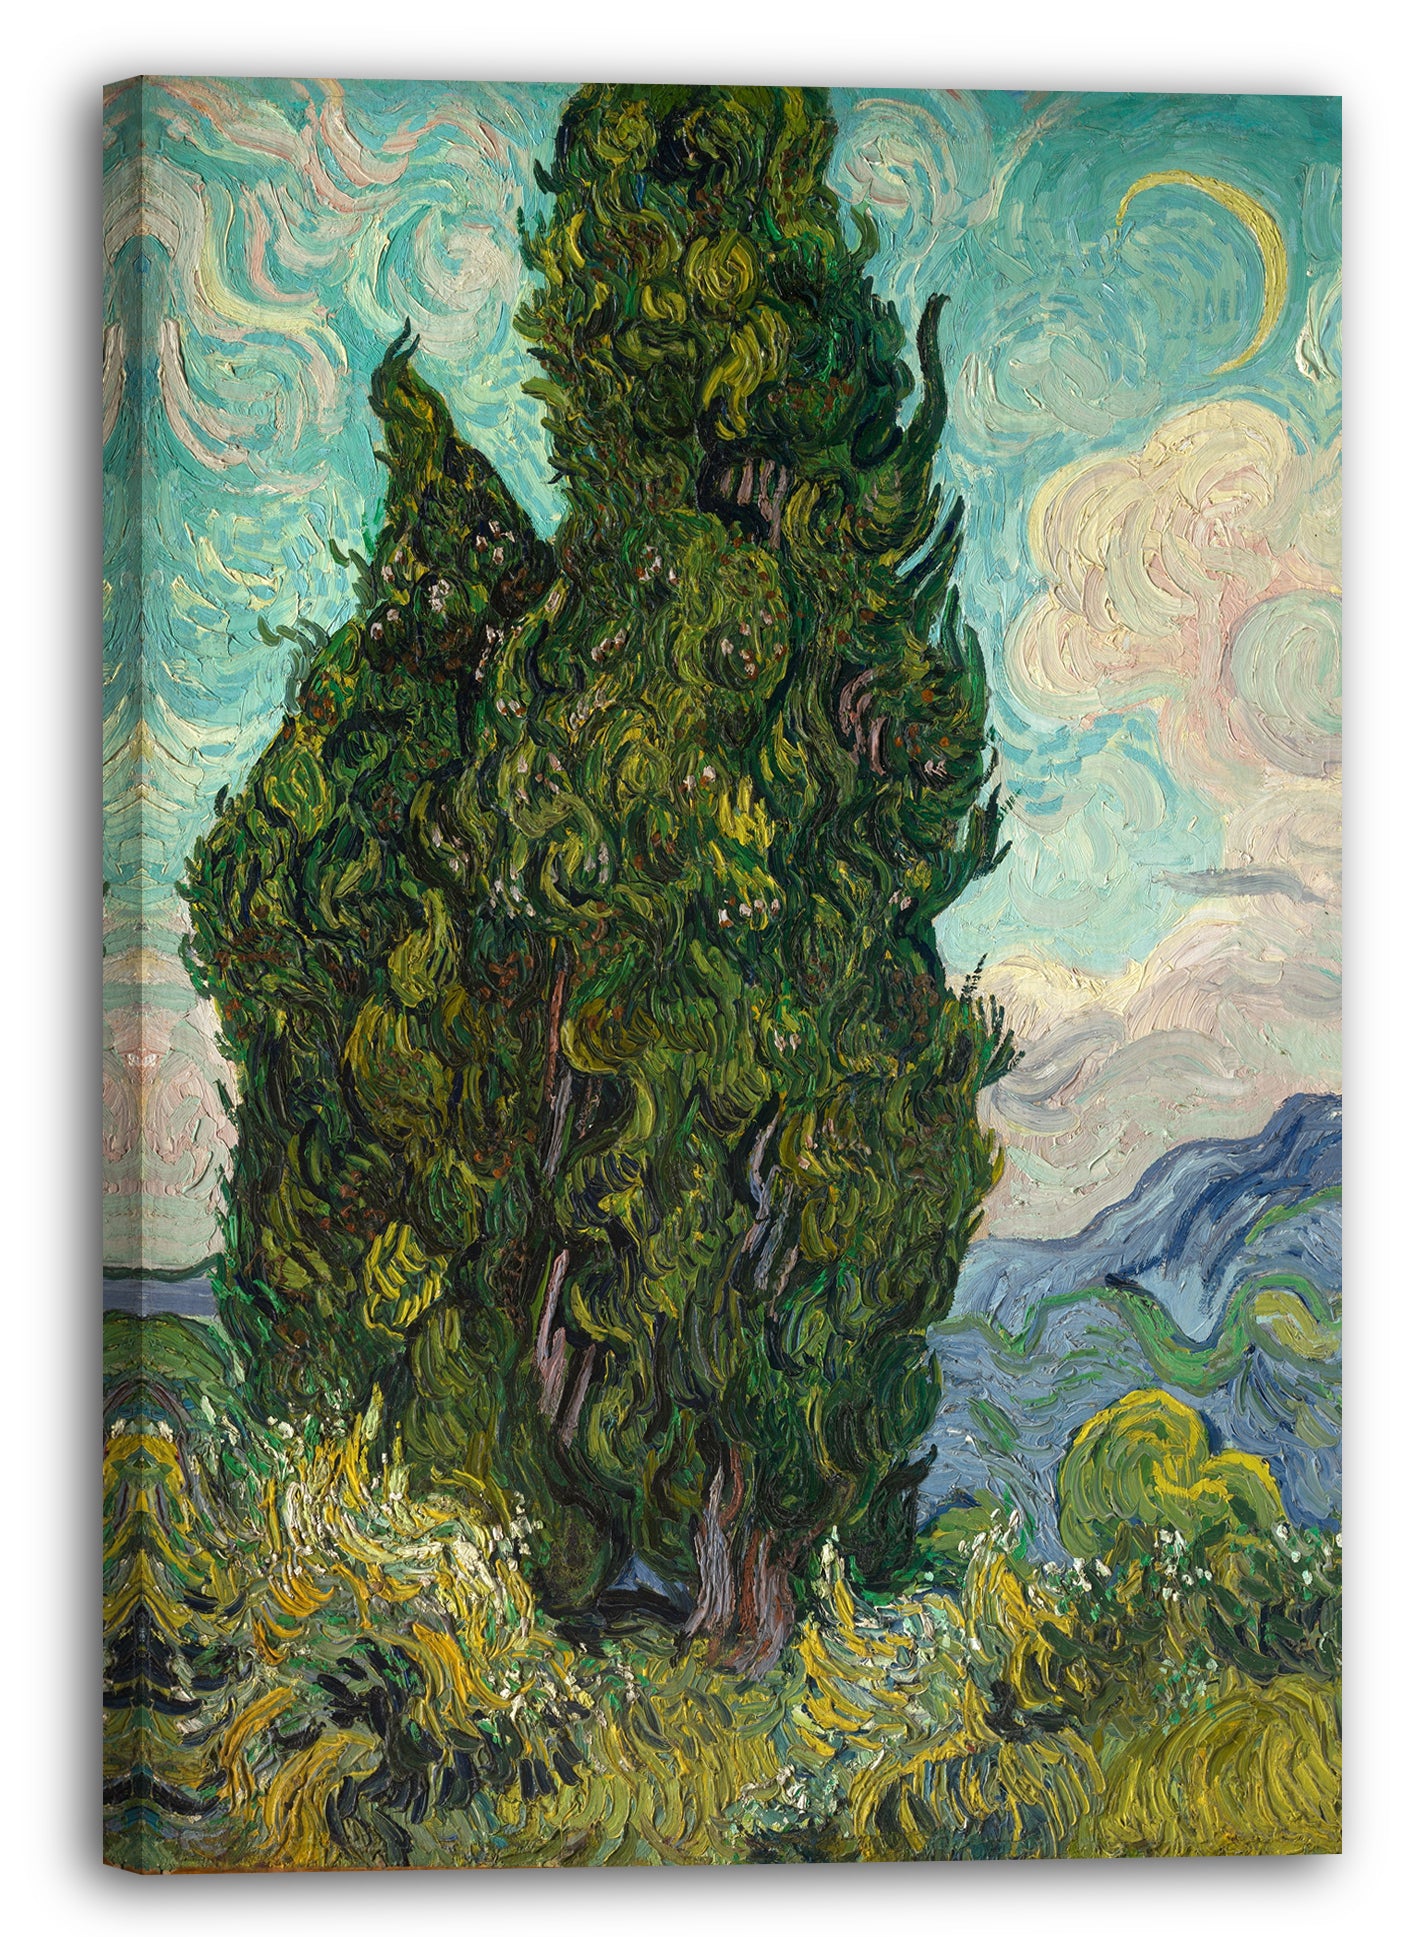 Leinwandbild Vincent van Gogh - Zypressen